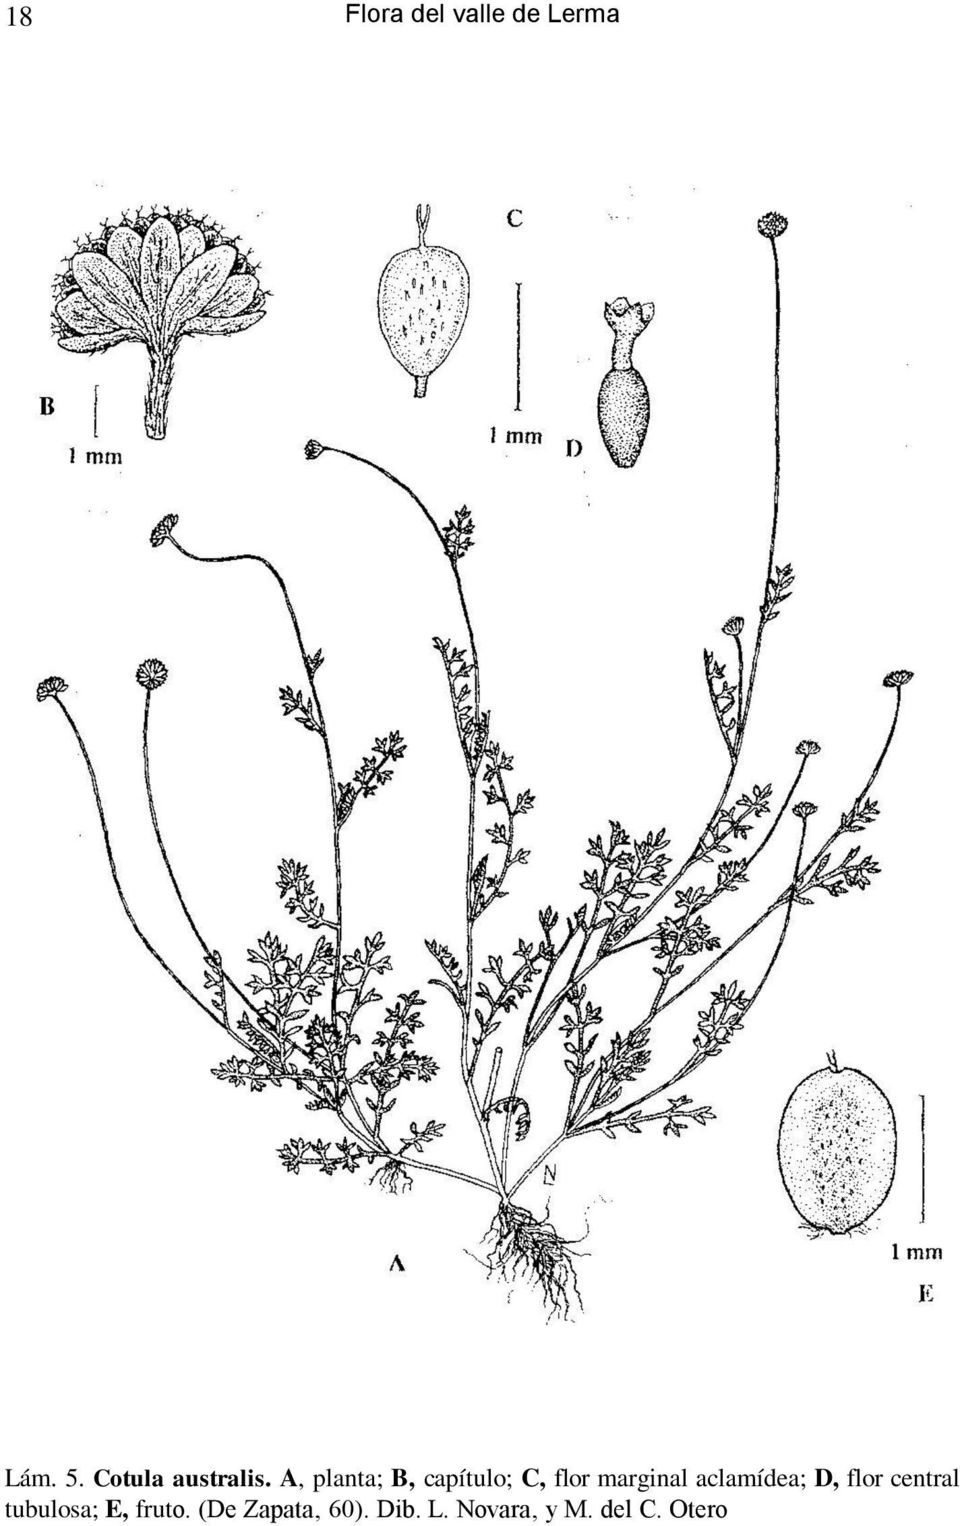 A, planta; B, capítulo; C, flor marginal